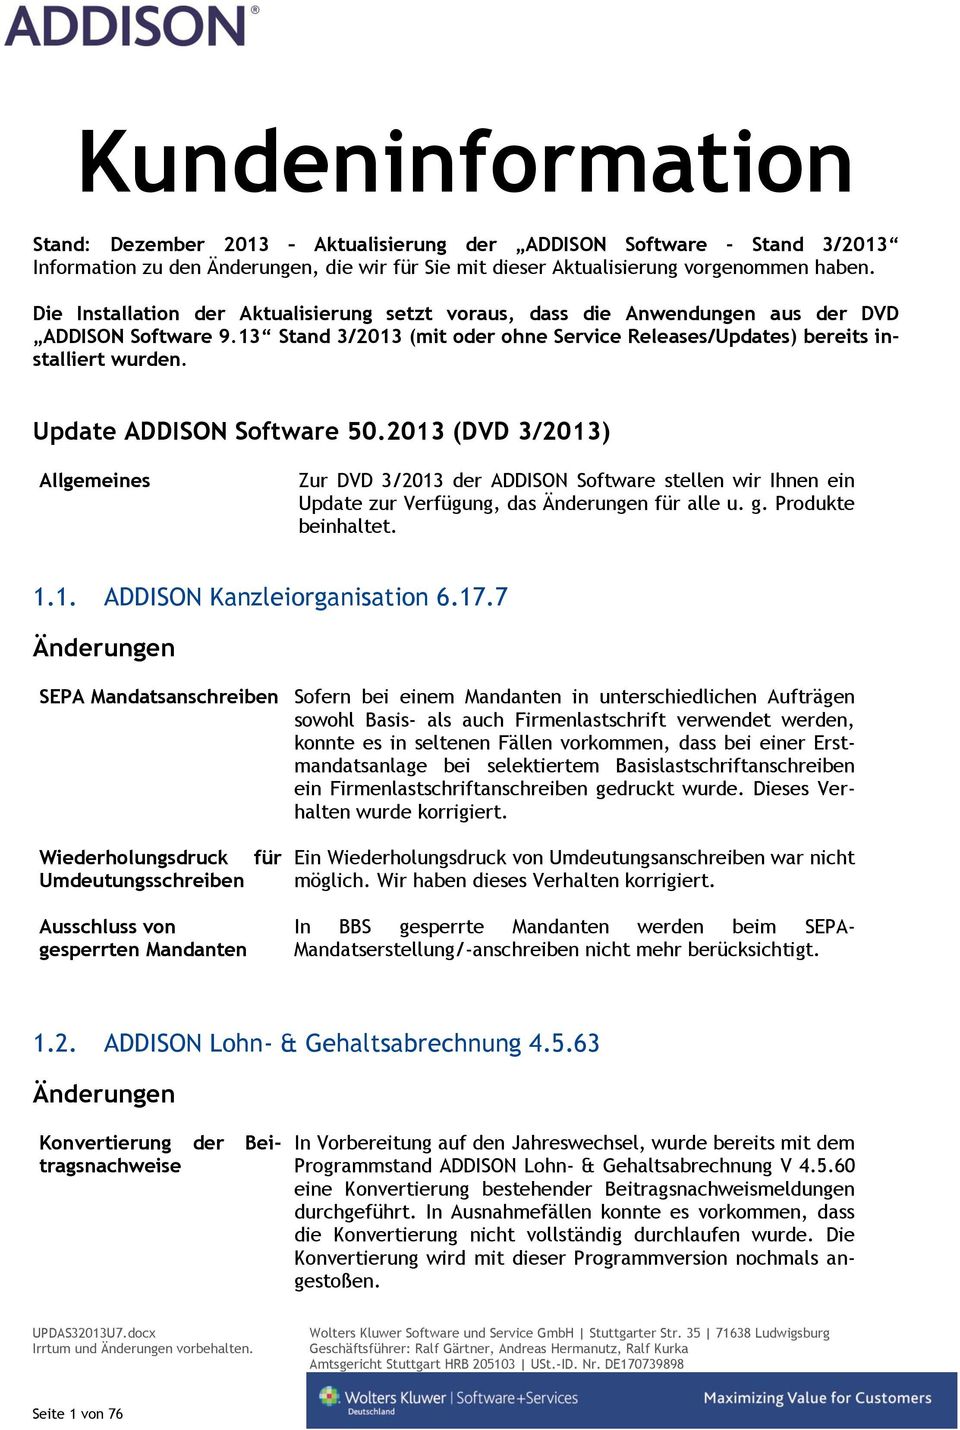 Update ADDISON Software 50.2013 (DVD 3/2013) Allgemeines Zur DVD 3/2013 der ADDISON Software stellen wir Ihnen ein Update zur Verfügung, das für alle u. g. Produkte beinhaltet. 1.1. ADDISON Kanzleiorganisation 6.